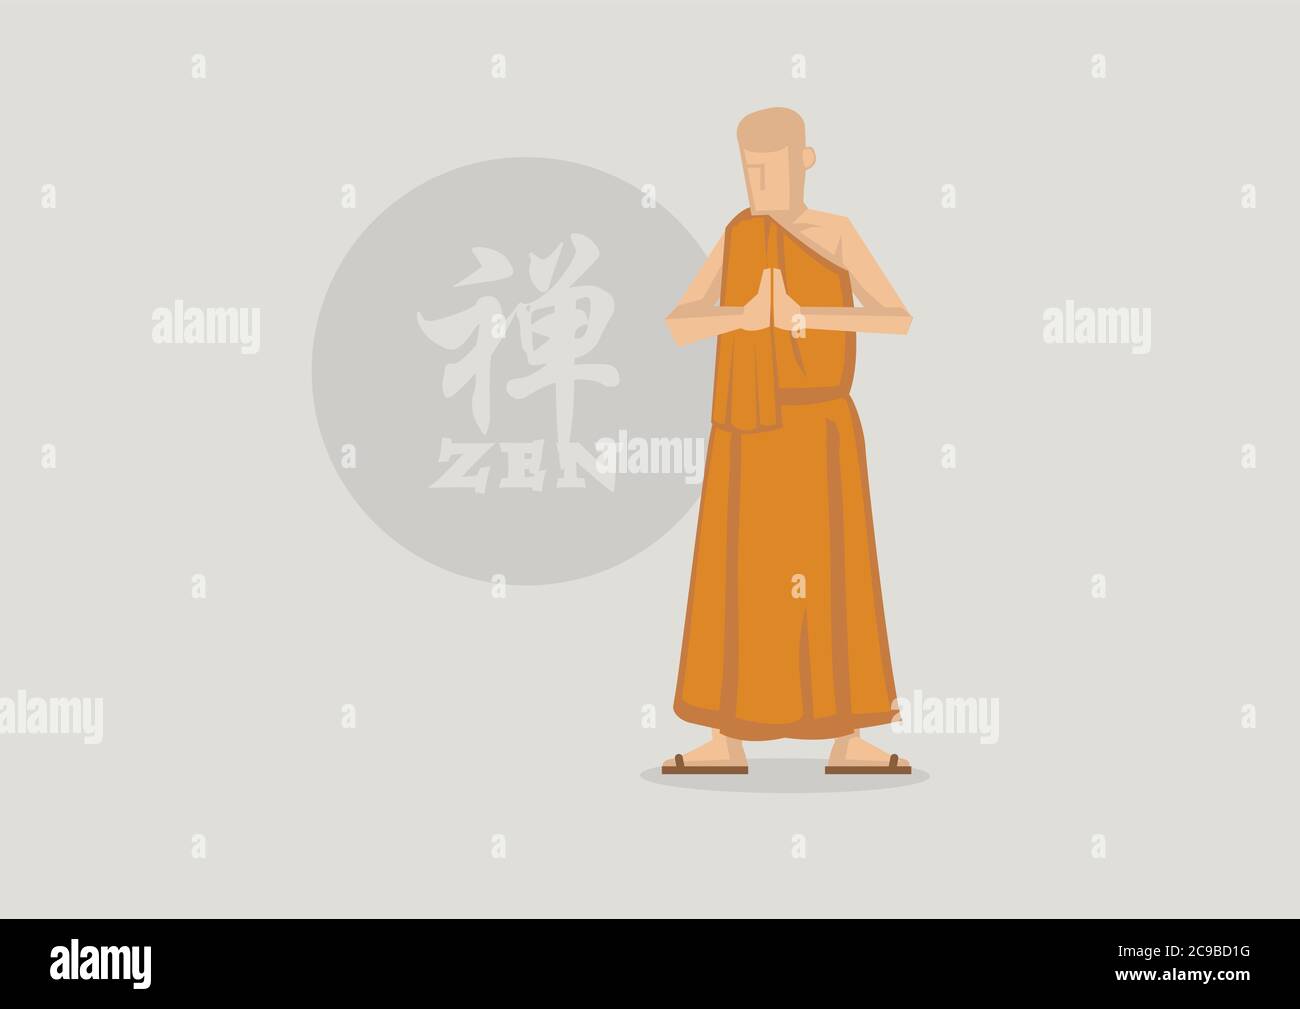 Illustration vectorielle du moine bouddhiste portant une robe de safran priant avec les paumes ensemble et debout devant le symbole du cercle Zen. Caractère chinois ou Illustration de Vecteur